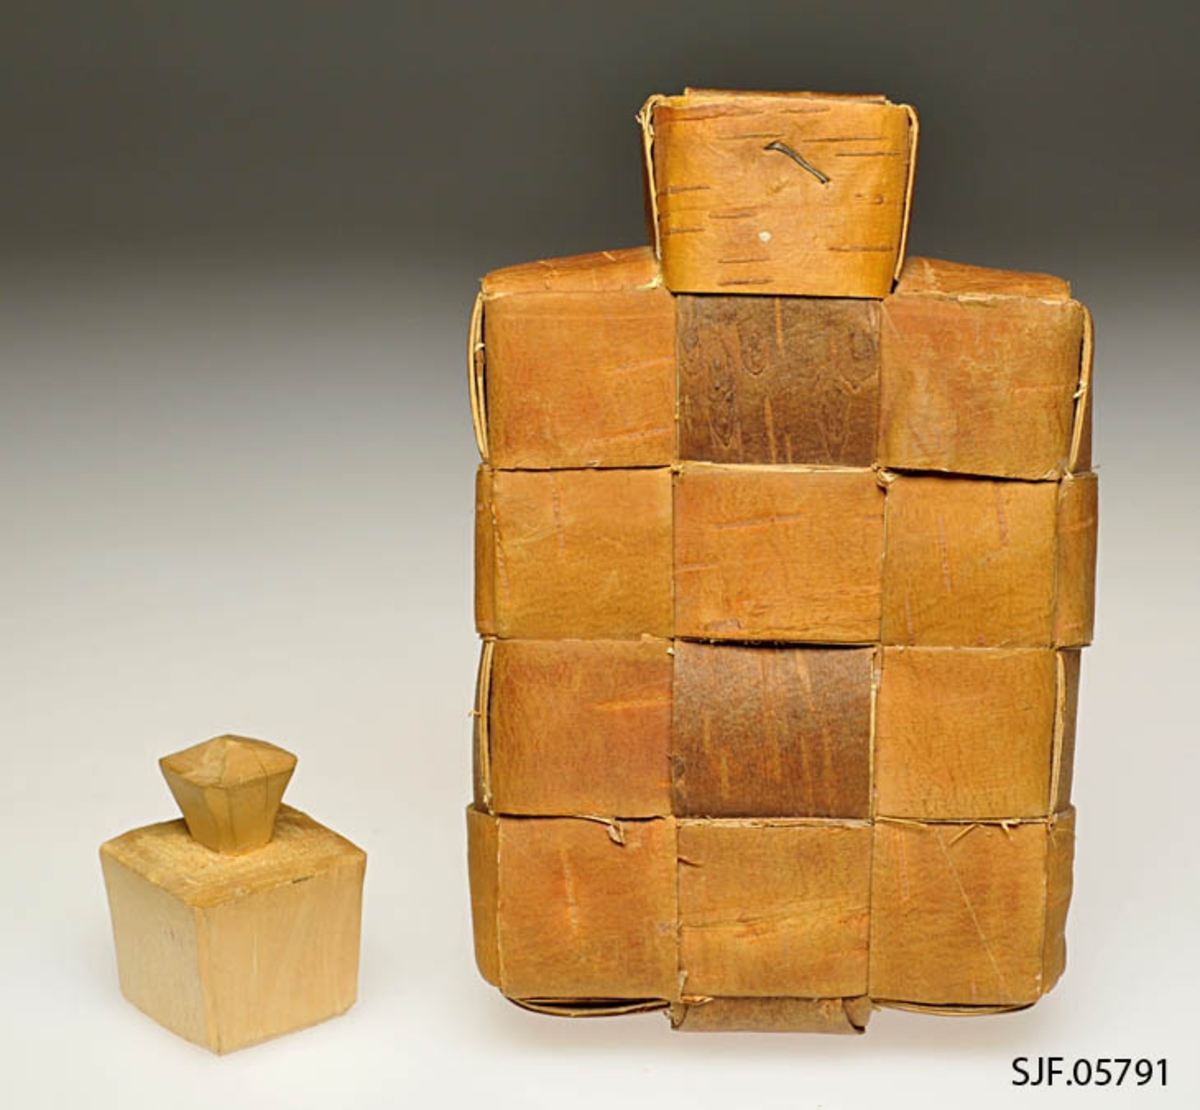 Saltflaska er flettet av never. Ved tuten er det brukt stiftemaskin for å feste nevra. Proppen er av ubehandlet bjørk. Den er laget av Mentz Åsen, Grue Finskog ca. 1963, og kjøpt inn til museet da. 